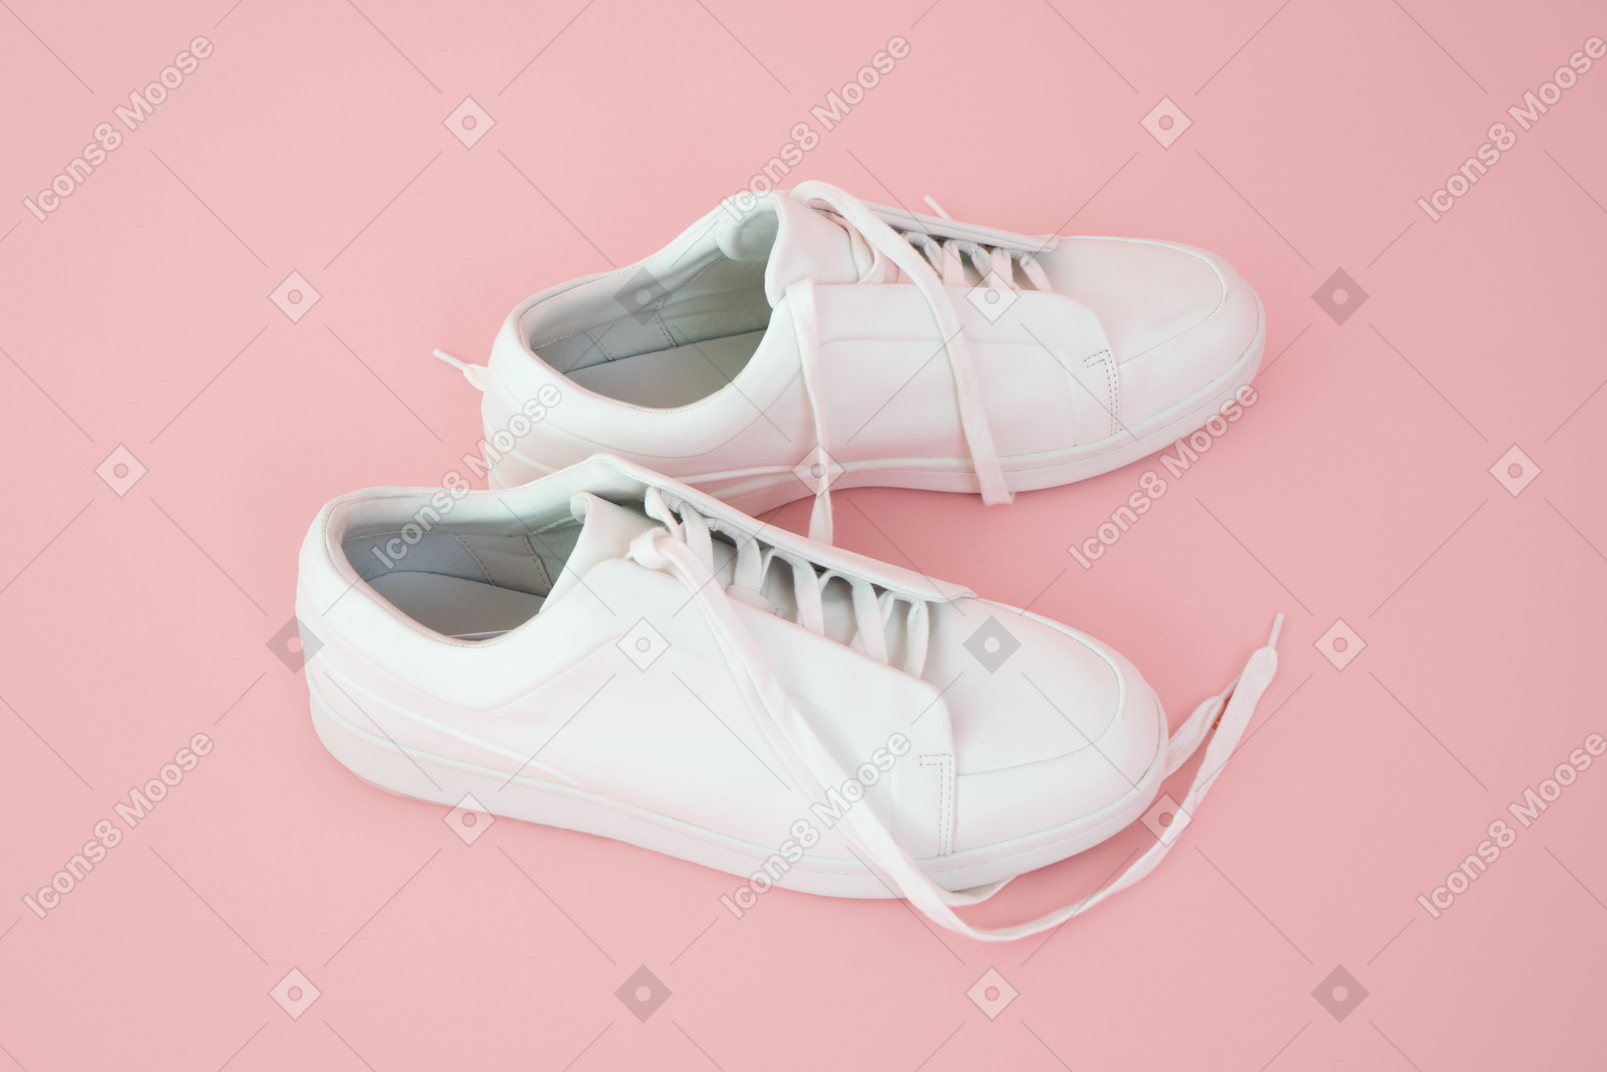 Chaussures de course sur fond rose